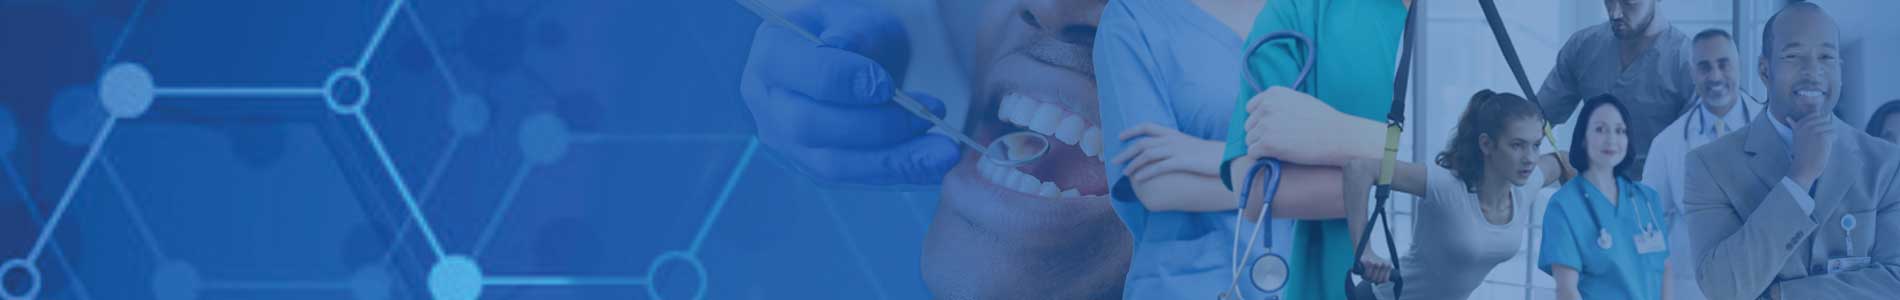 Dental Hygiene Admissions banner image